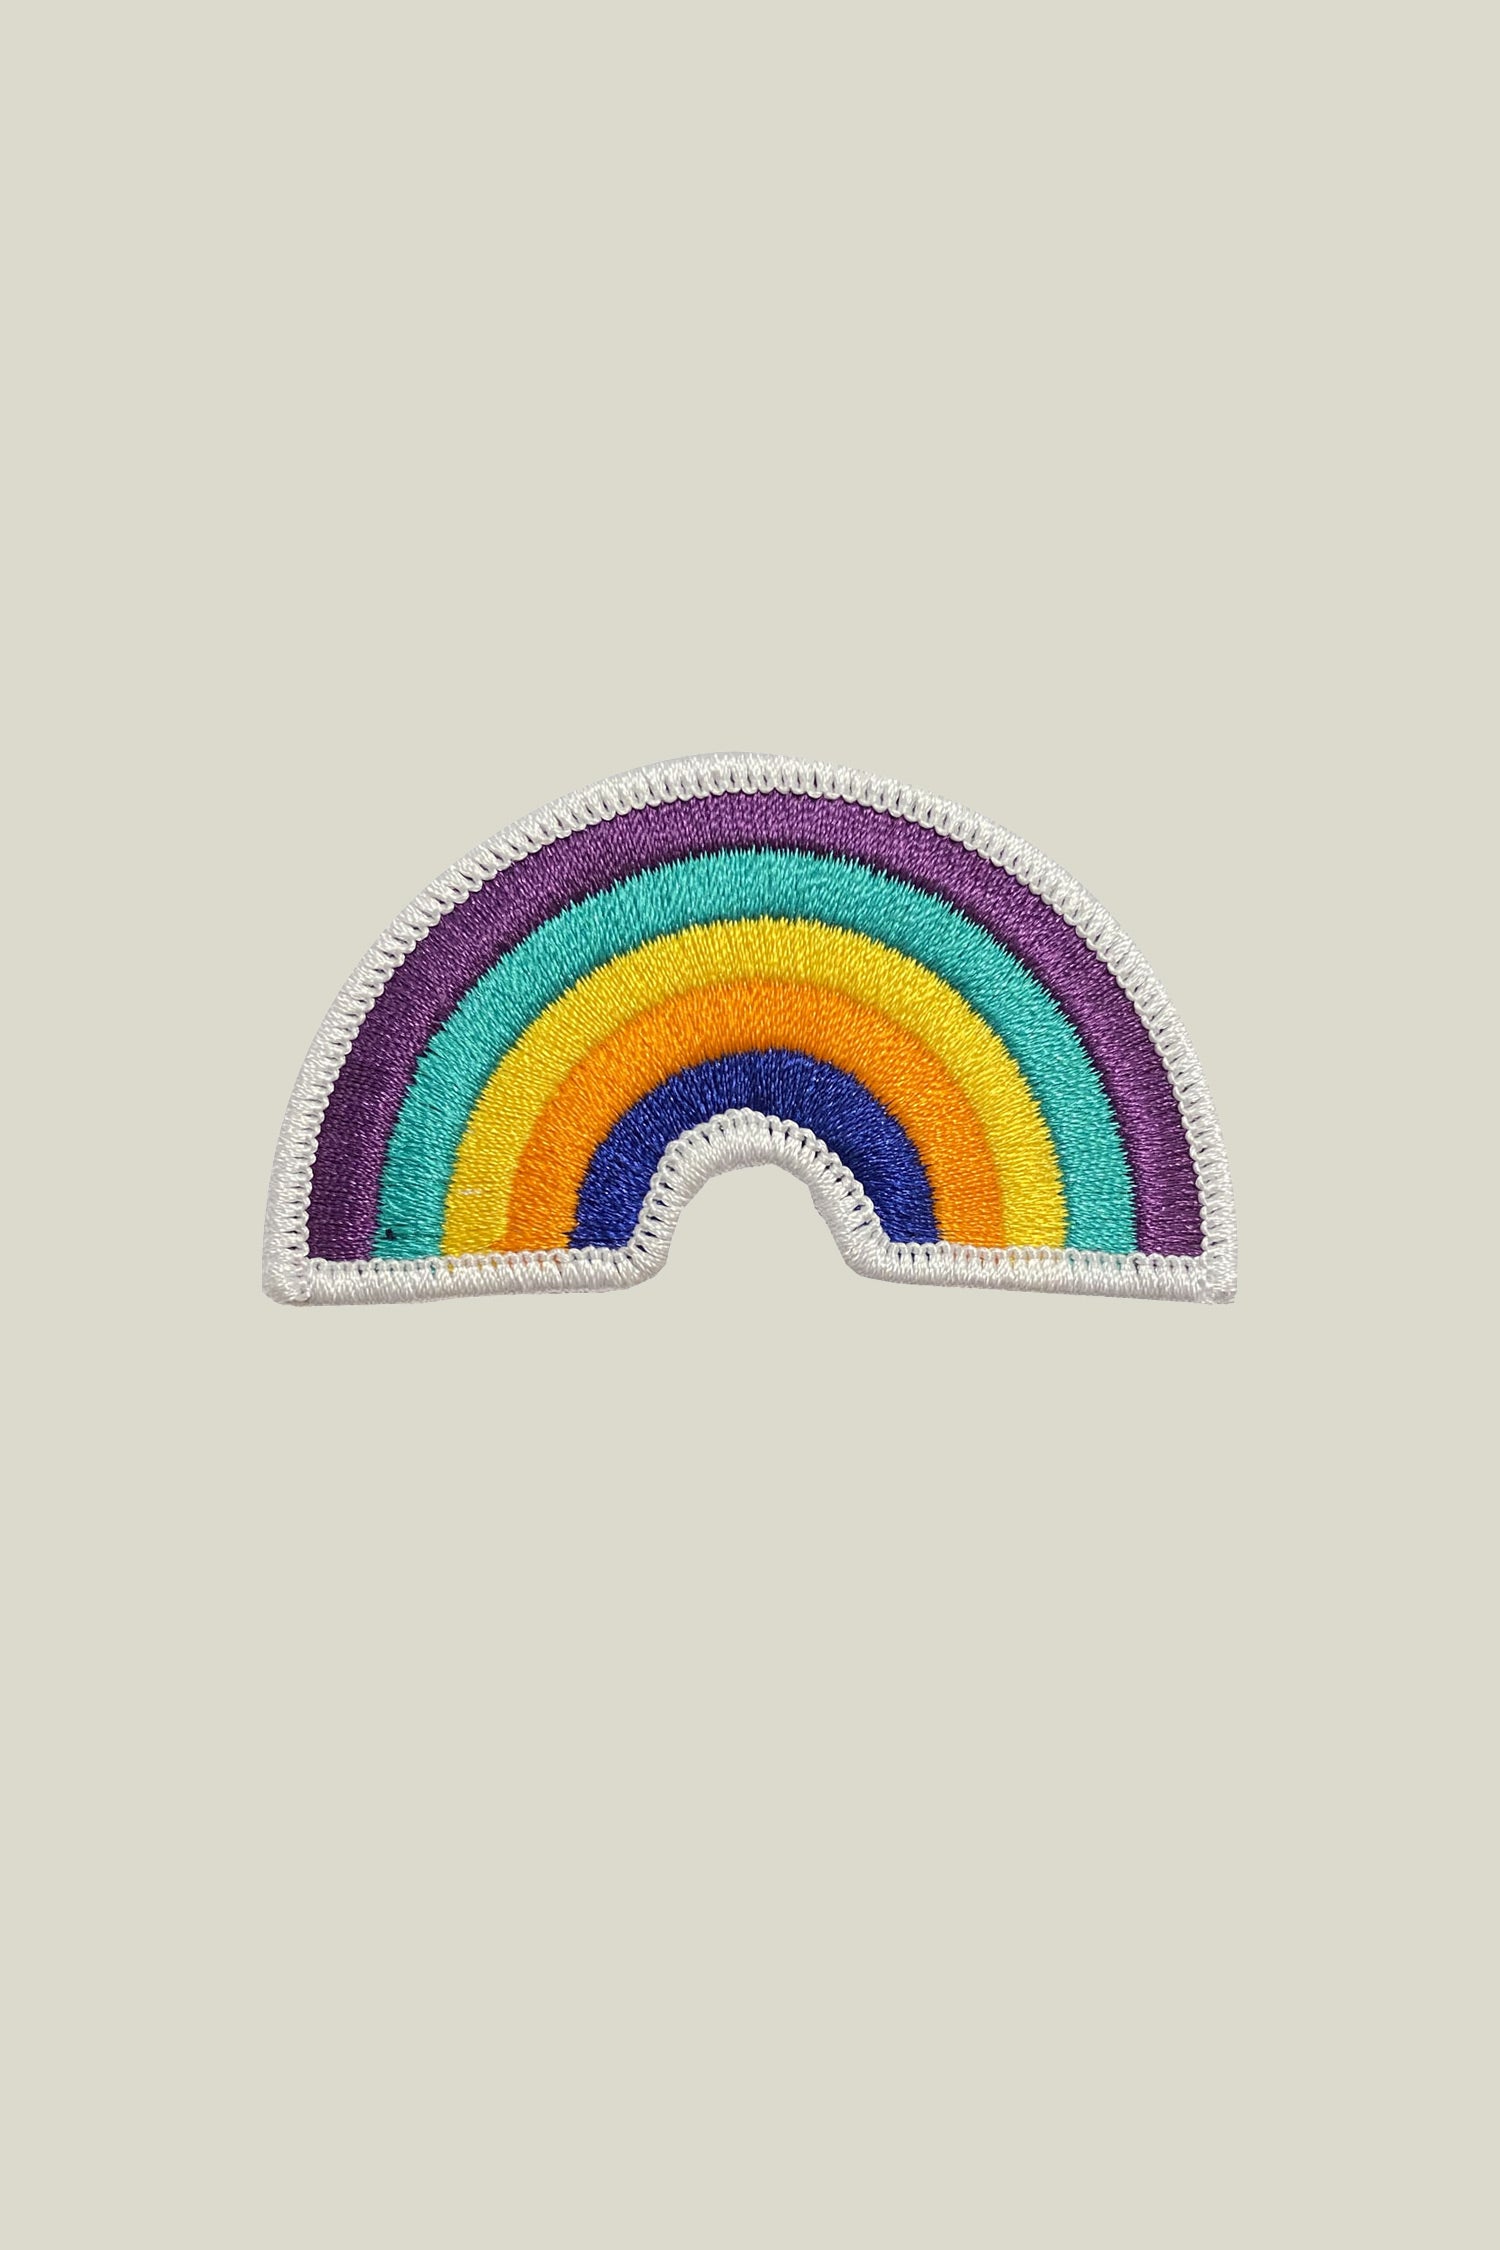 Patch "Rainbow"